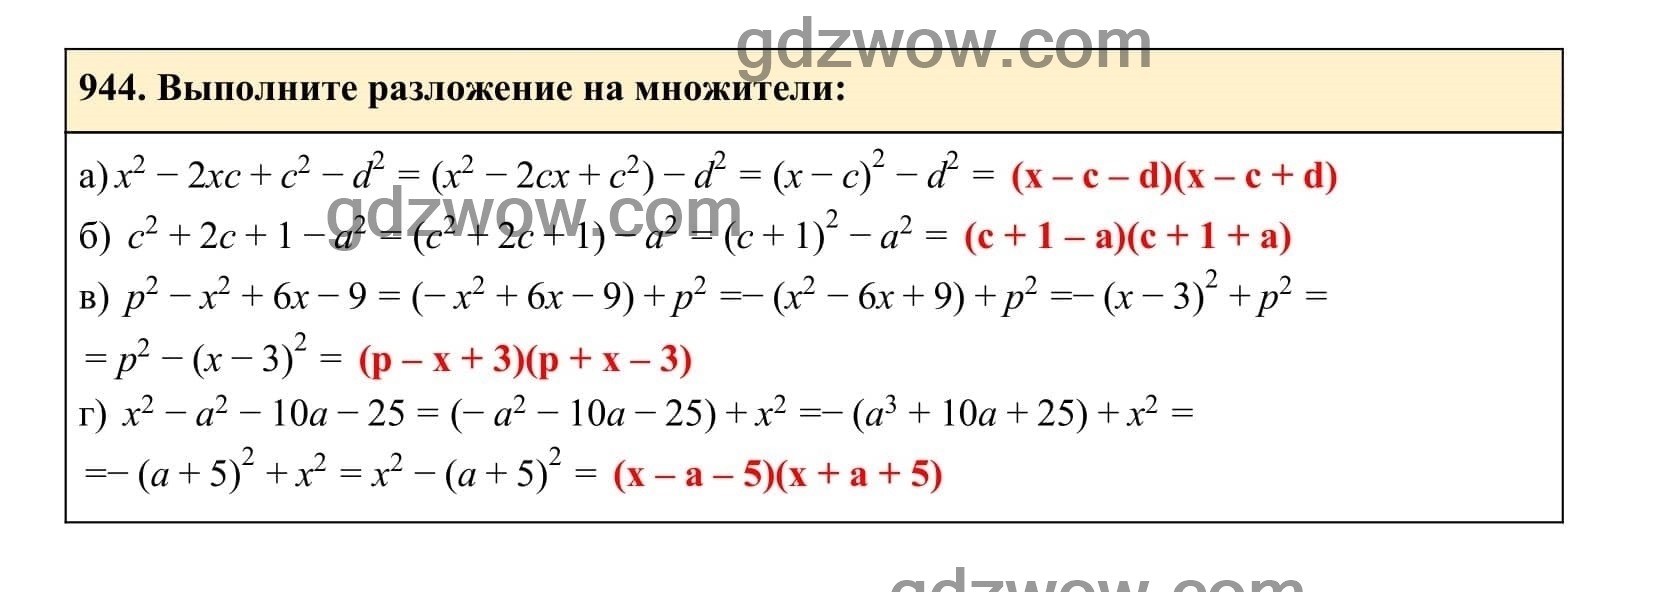 Упражнение 944 - ГДЗ по Алгебре 7 класс Учебник Макарычев (решебник) - GDZwow